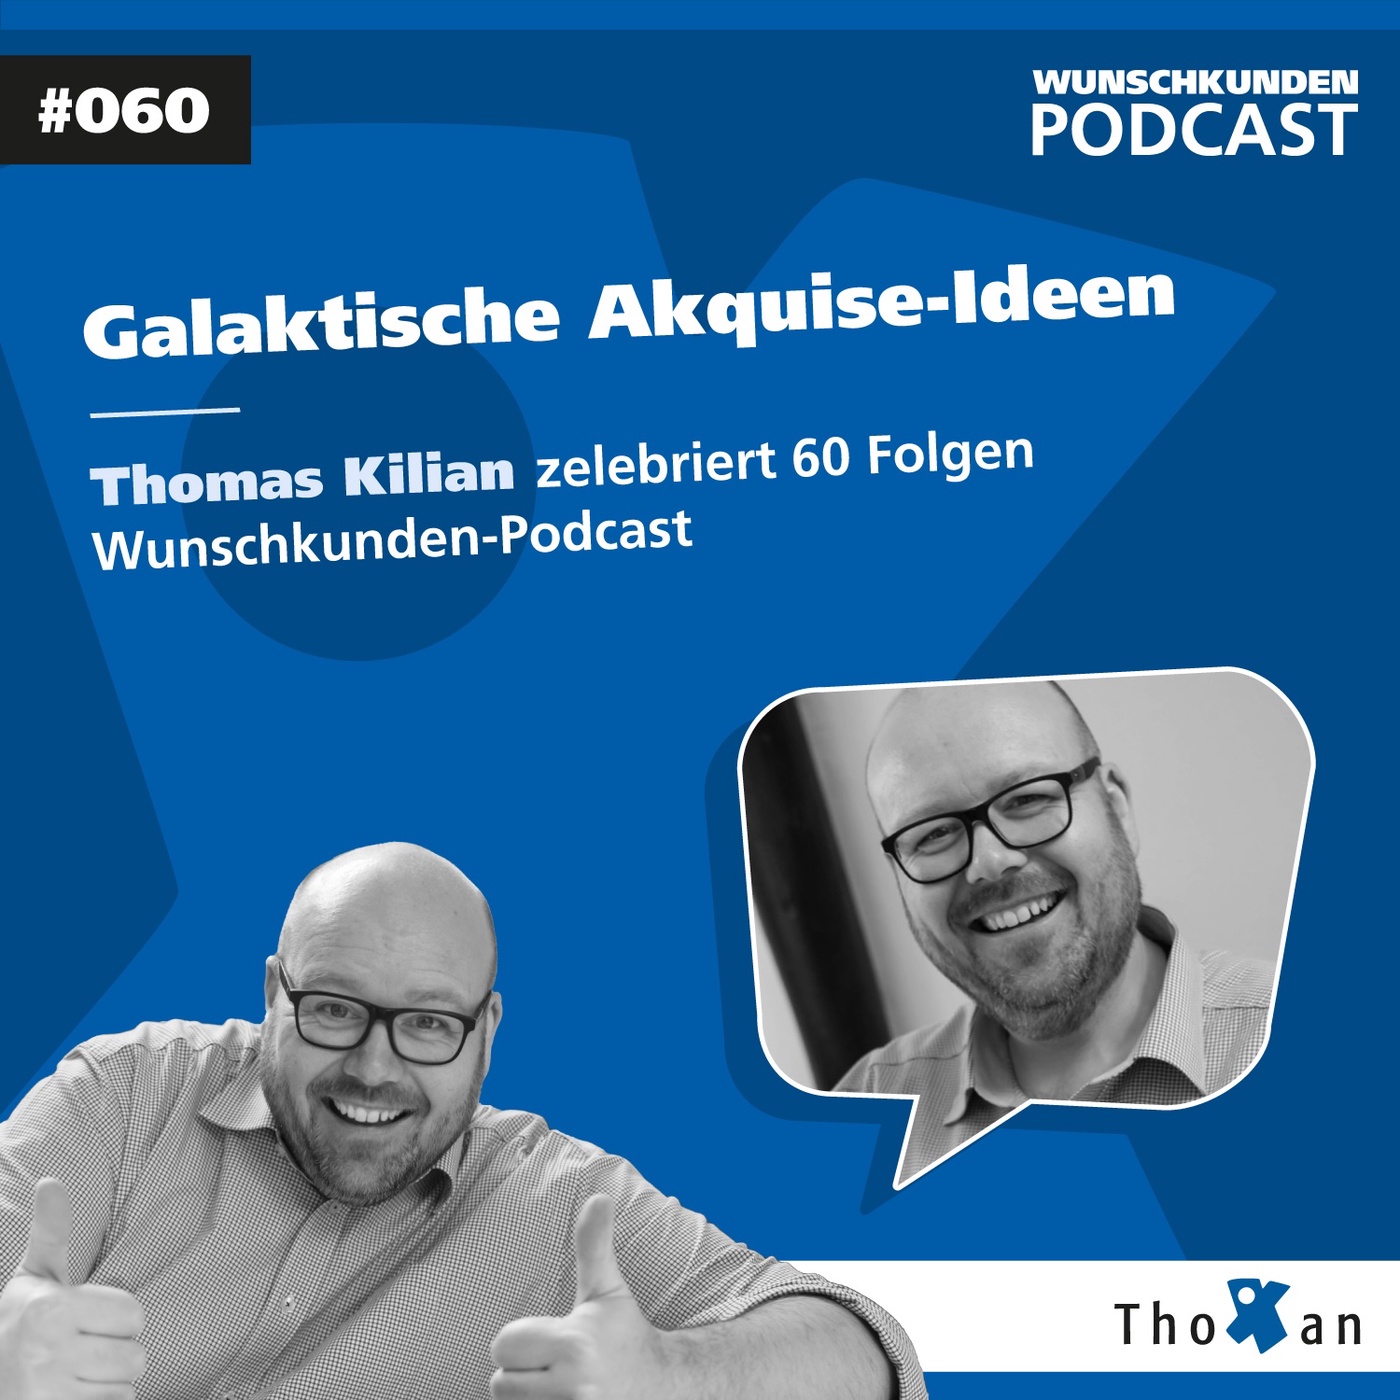 Galaktische Akquise-Ideen: Thomas Kilian zelebriert 60 Folgen Wunschkunden-Podcast